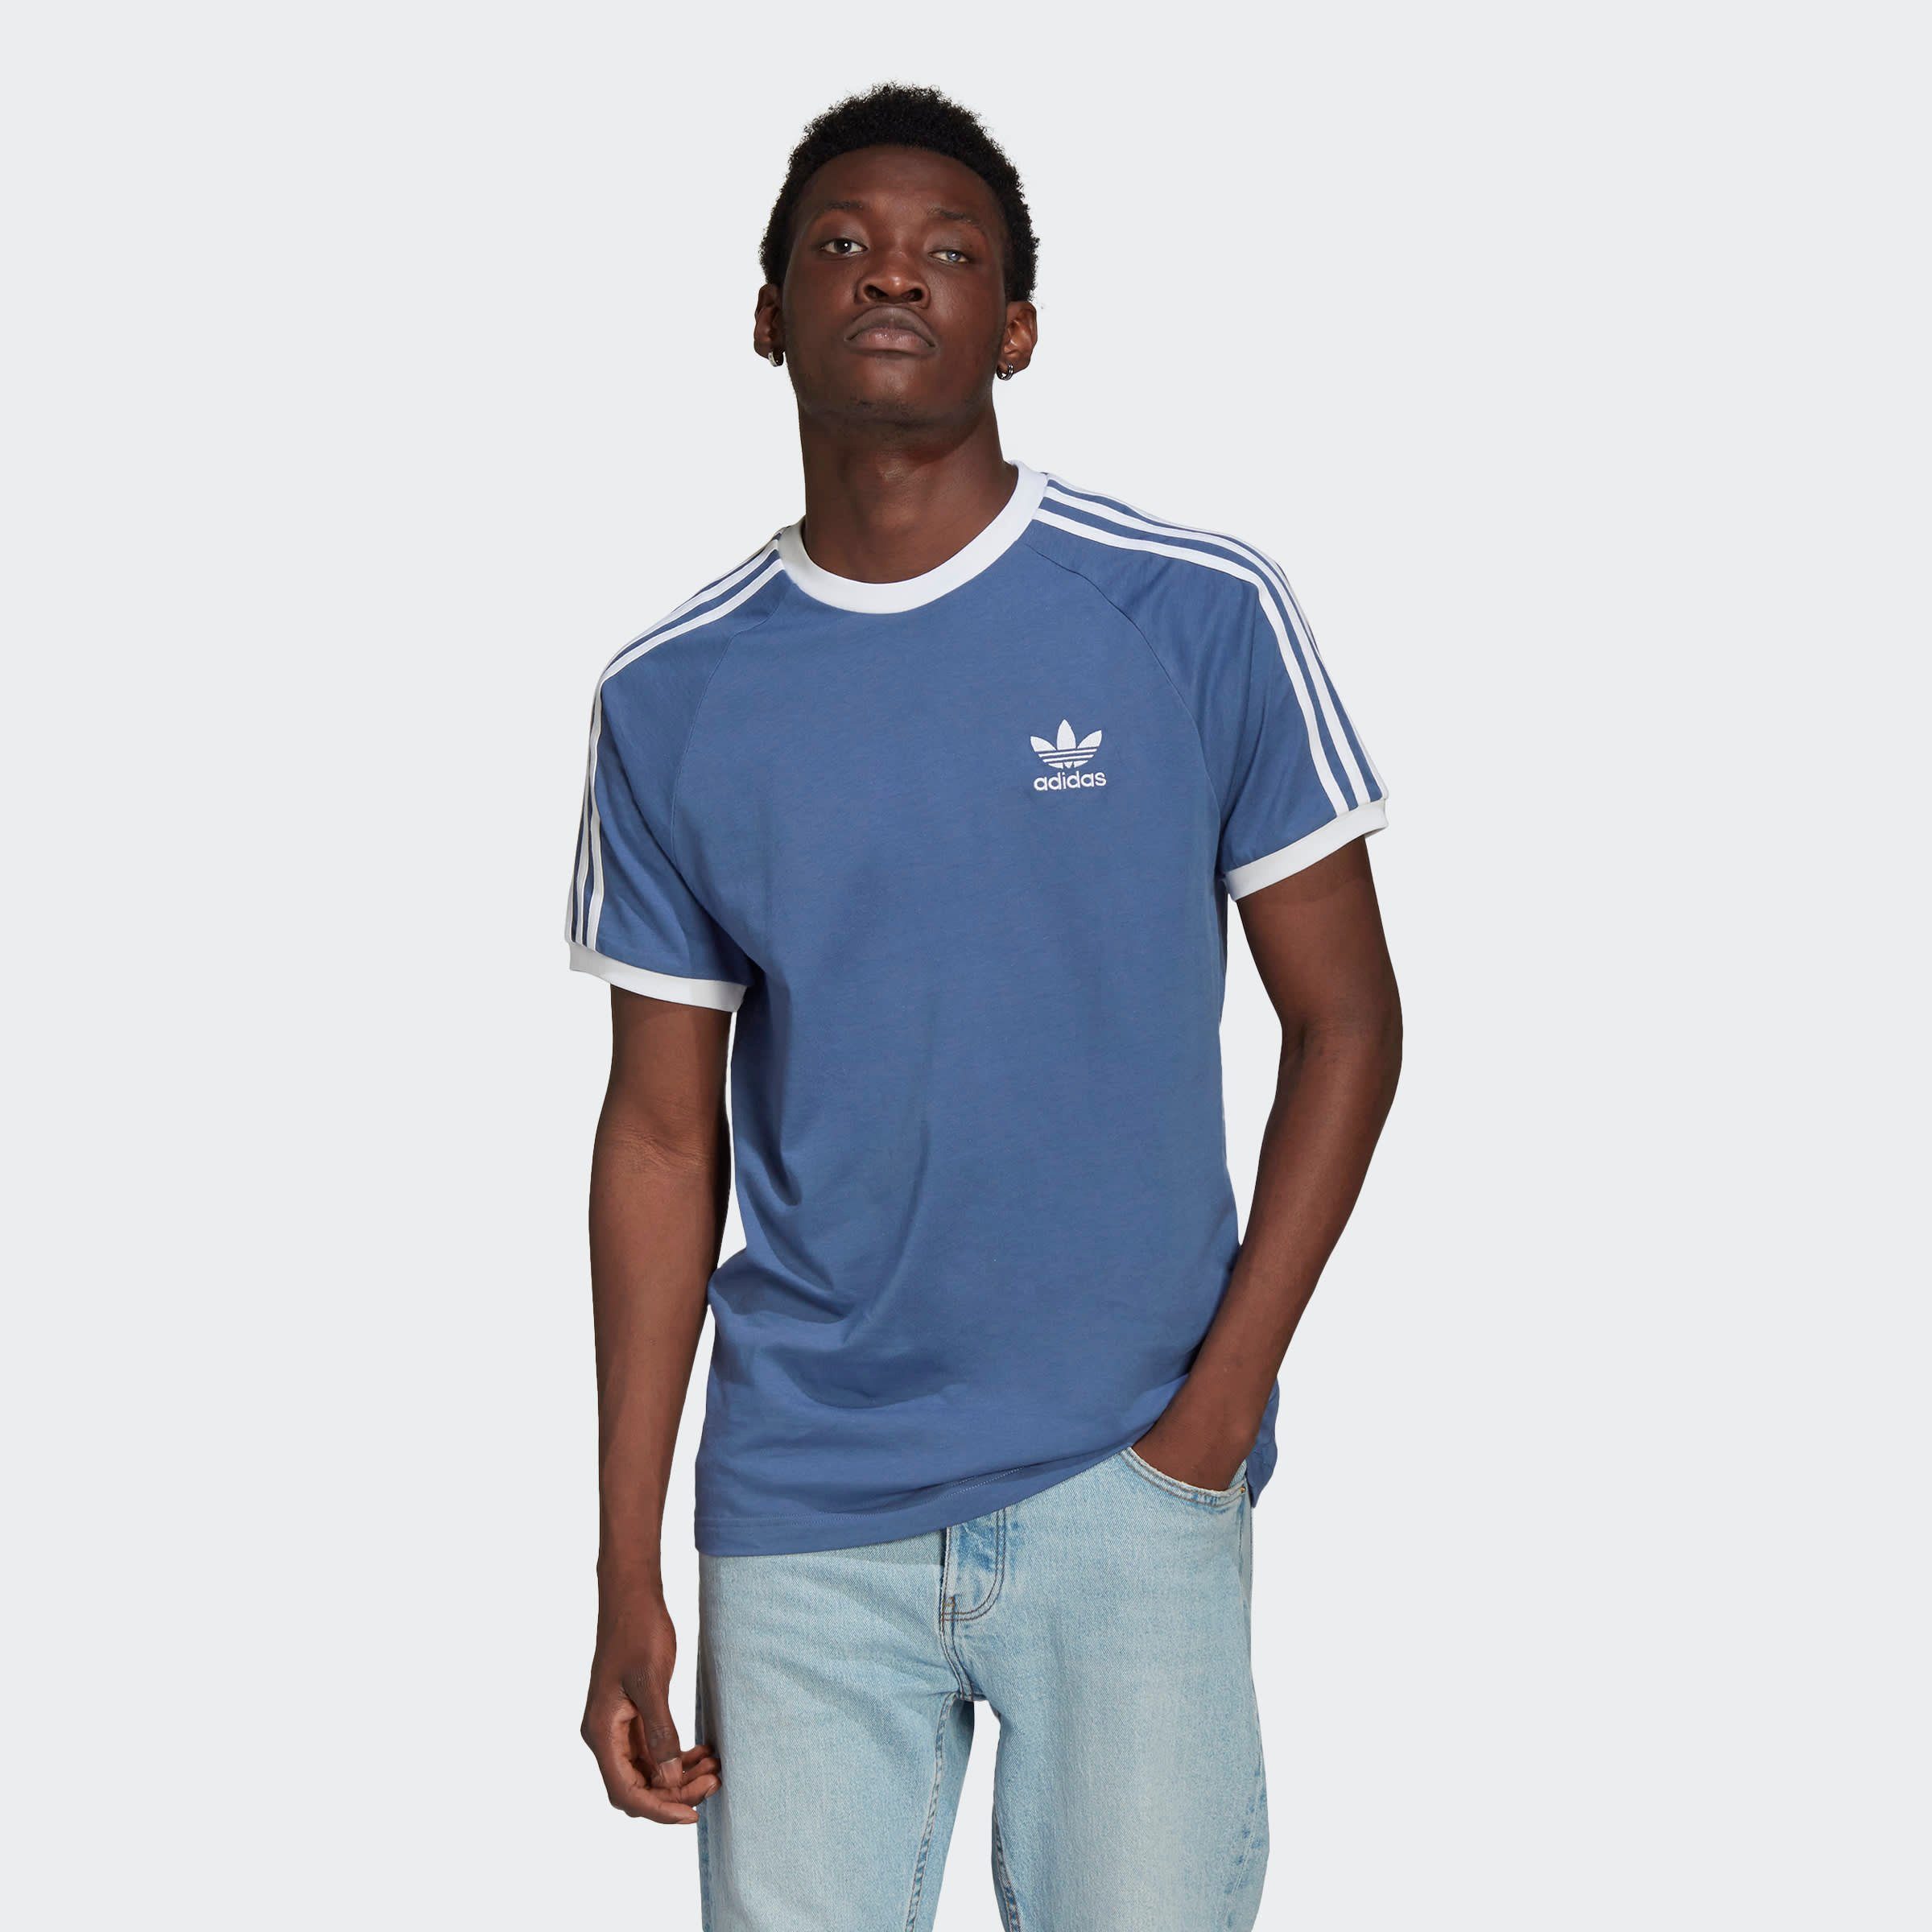 البازلاء تقني غلاديس رقمي وميض محكوم adidas drei streifen shirt blau -  gwendriscolldesigns.com